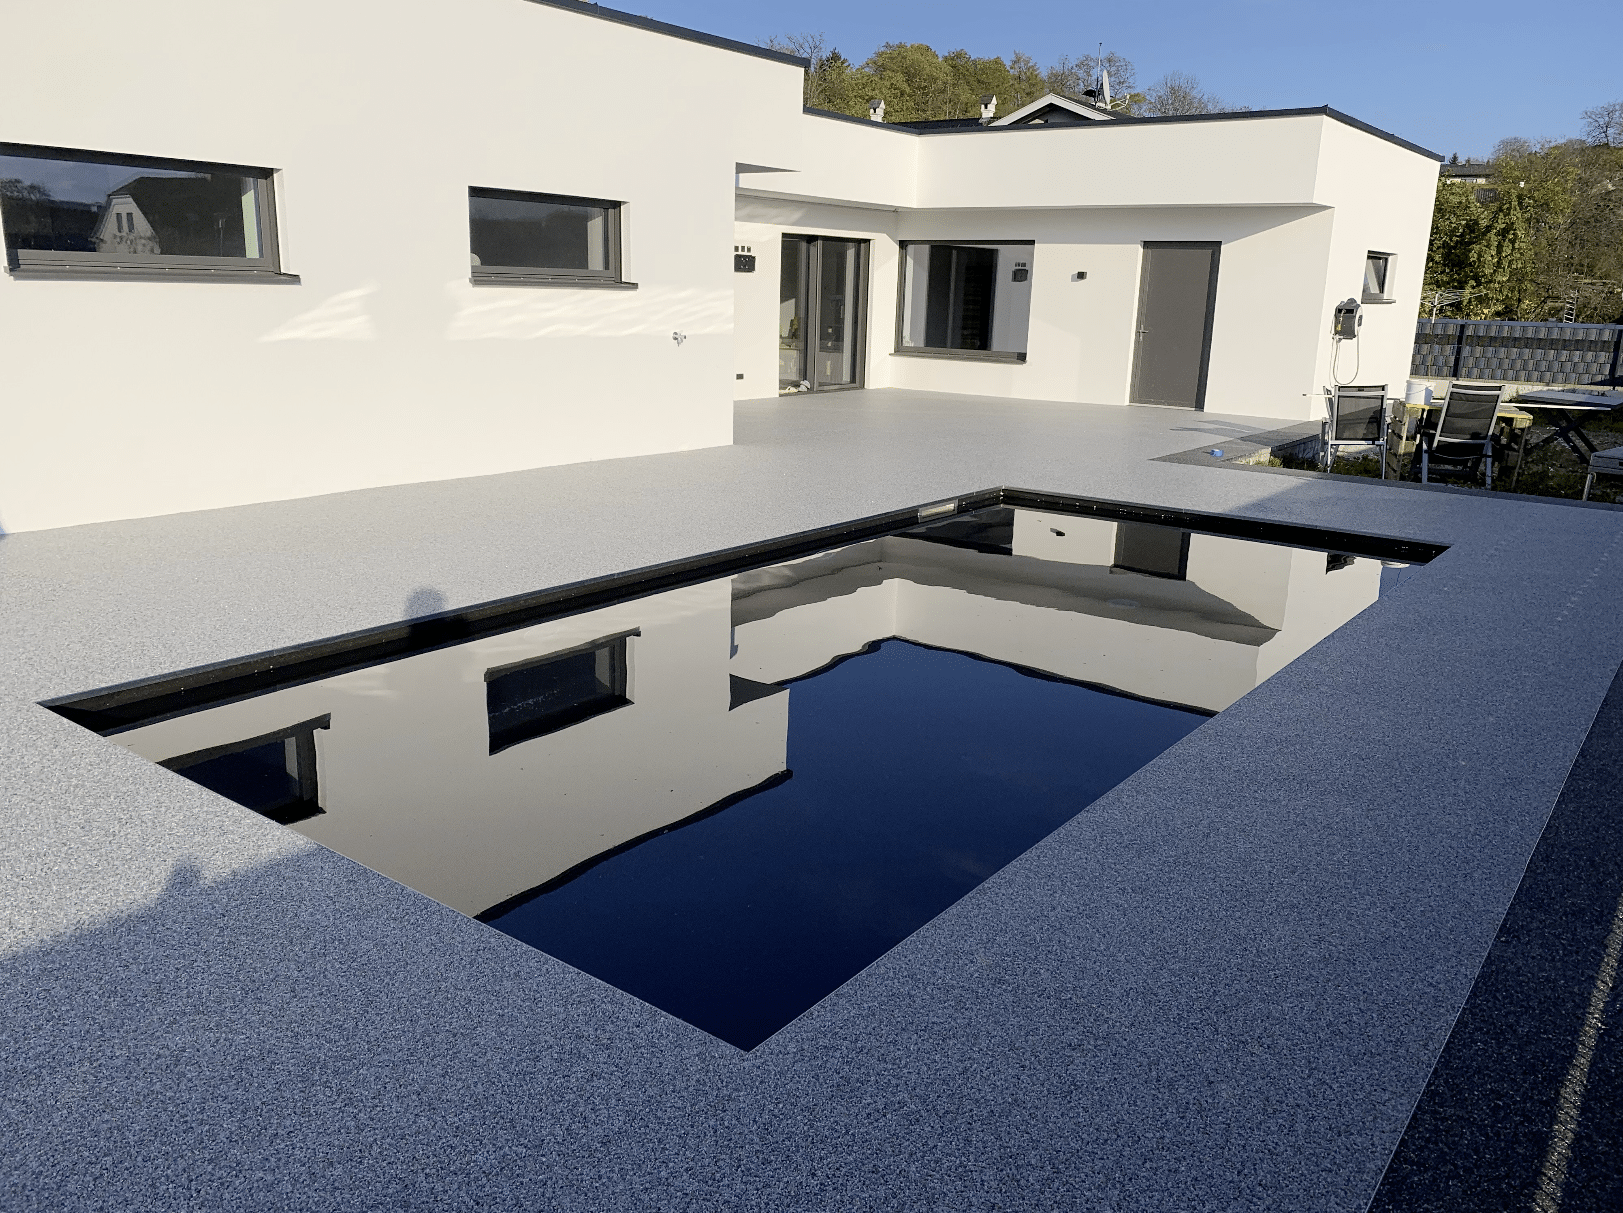 stoneCARPET präsentiert den Kieselteppich auf der Terrasse eines modernen Hauses, welcher rund um den Pool gelegt wurde um das natürliche Gefühl zu wahren.